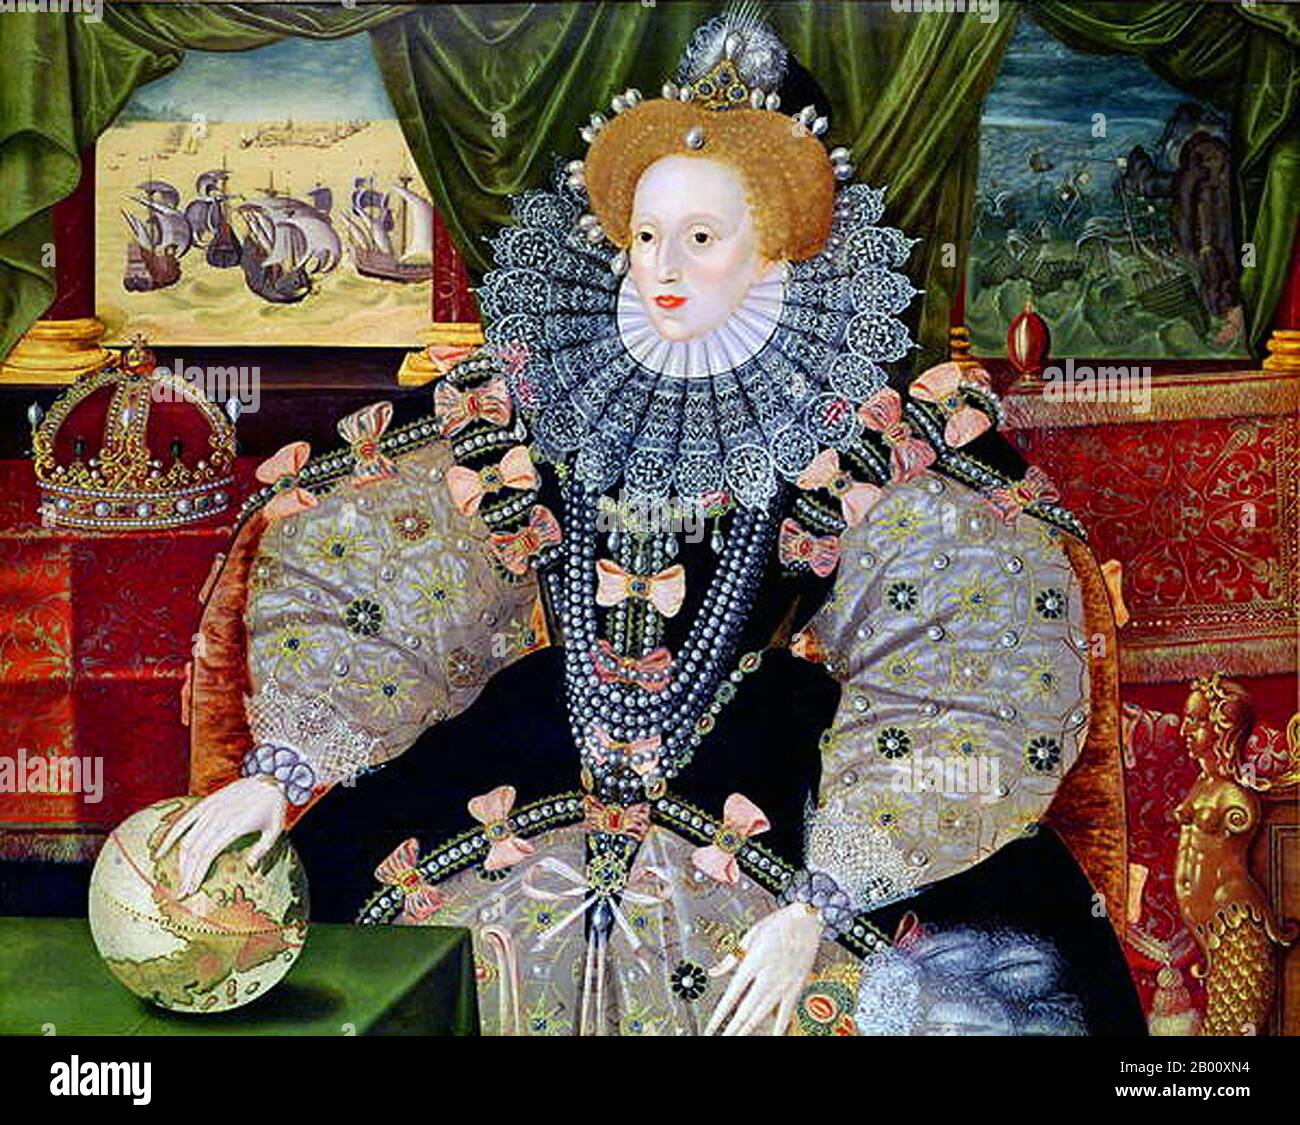 England: 'Porträt von Elisabeth I. von England, das Armada-Porträt'. Öl auf Tafelmalerei früher zugeschrieben George Gower (1540-1596), c. 1588. Elisabeth I. (7. September 1533 – 24. März 1603) war Königin Regnant von England und Königin Regnant von Irland vom 17. November 1558 bis zu ihrem Tod. Manchmal auch die Jungfrau Königin, Gloriana oder gute Königin Bess genannt, war Elisabeth der fünfte und letzte Monarch der Tudor-Dynastie. Elizabeth I.'s Außenpolitik in Bezug auf Asien, Afrika und Lateinamerika zeigte ein neues Verständnis für die Rolle Englands als maritime, protestantische Macht weltweit. Stockfoto